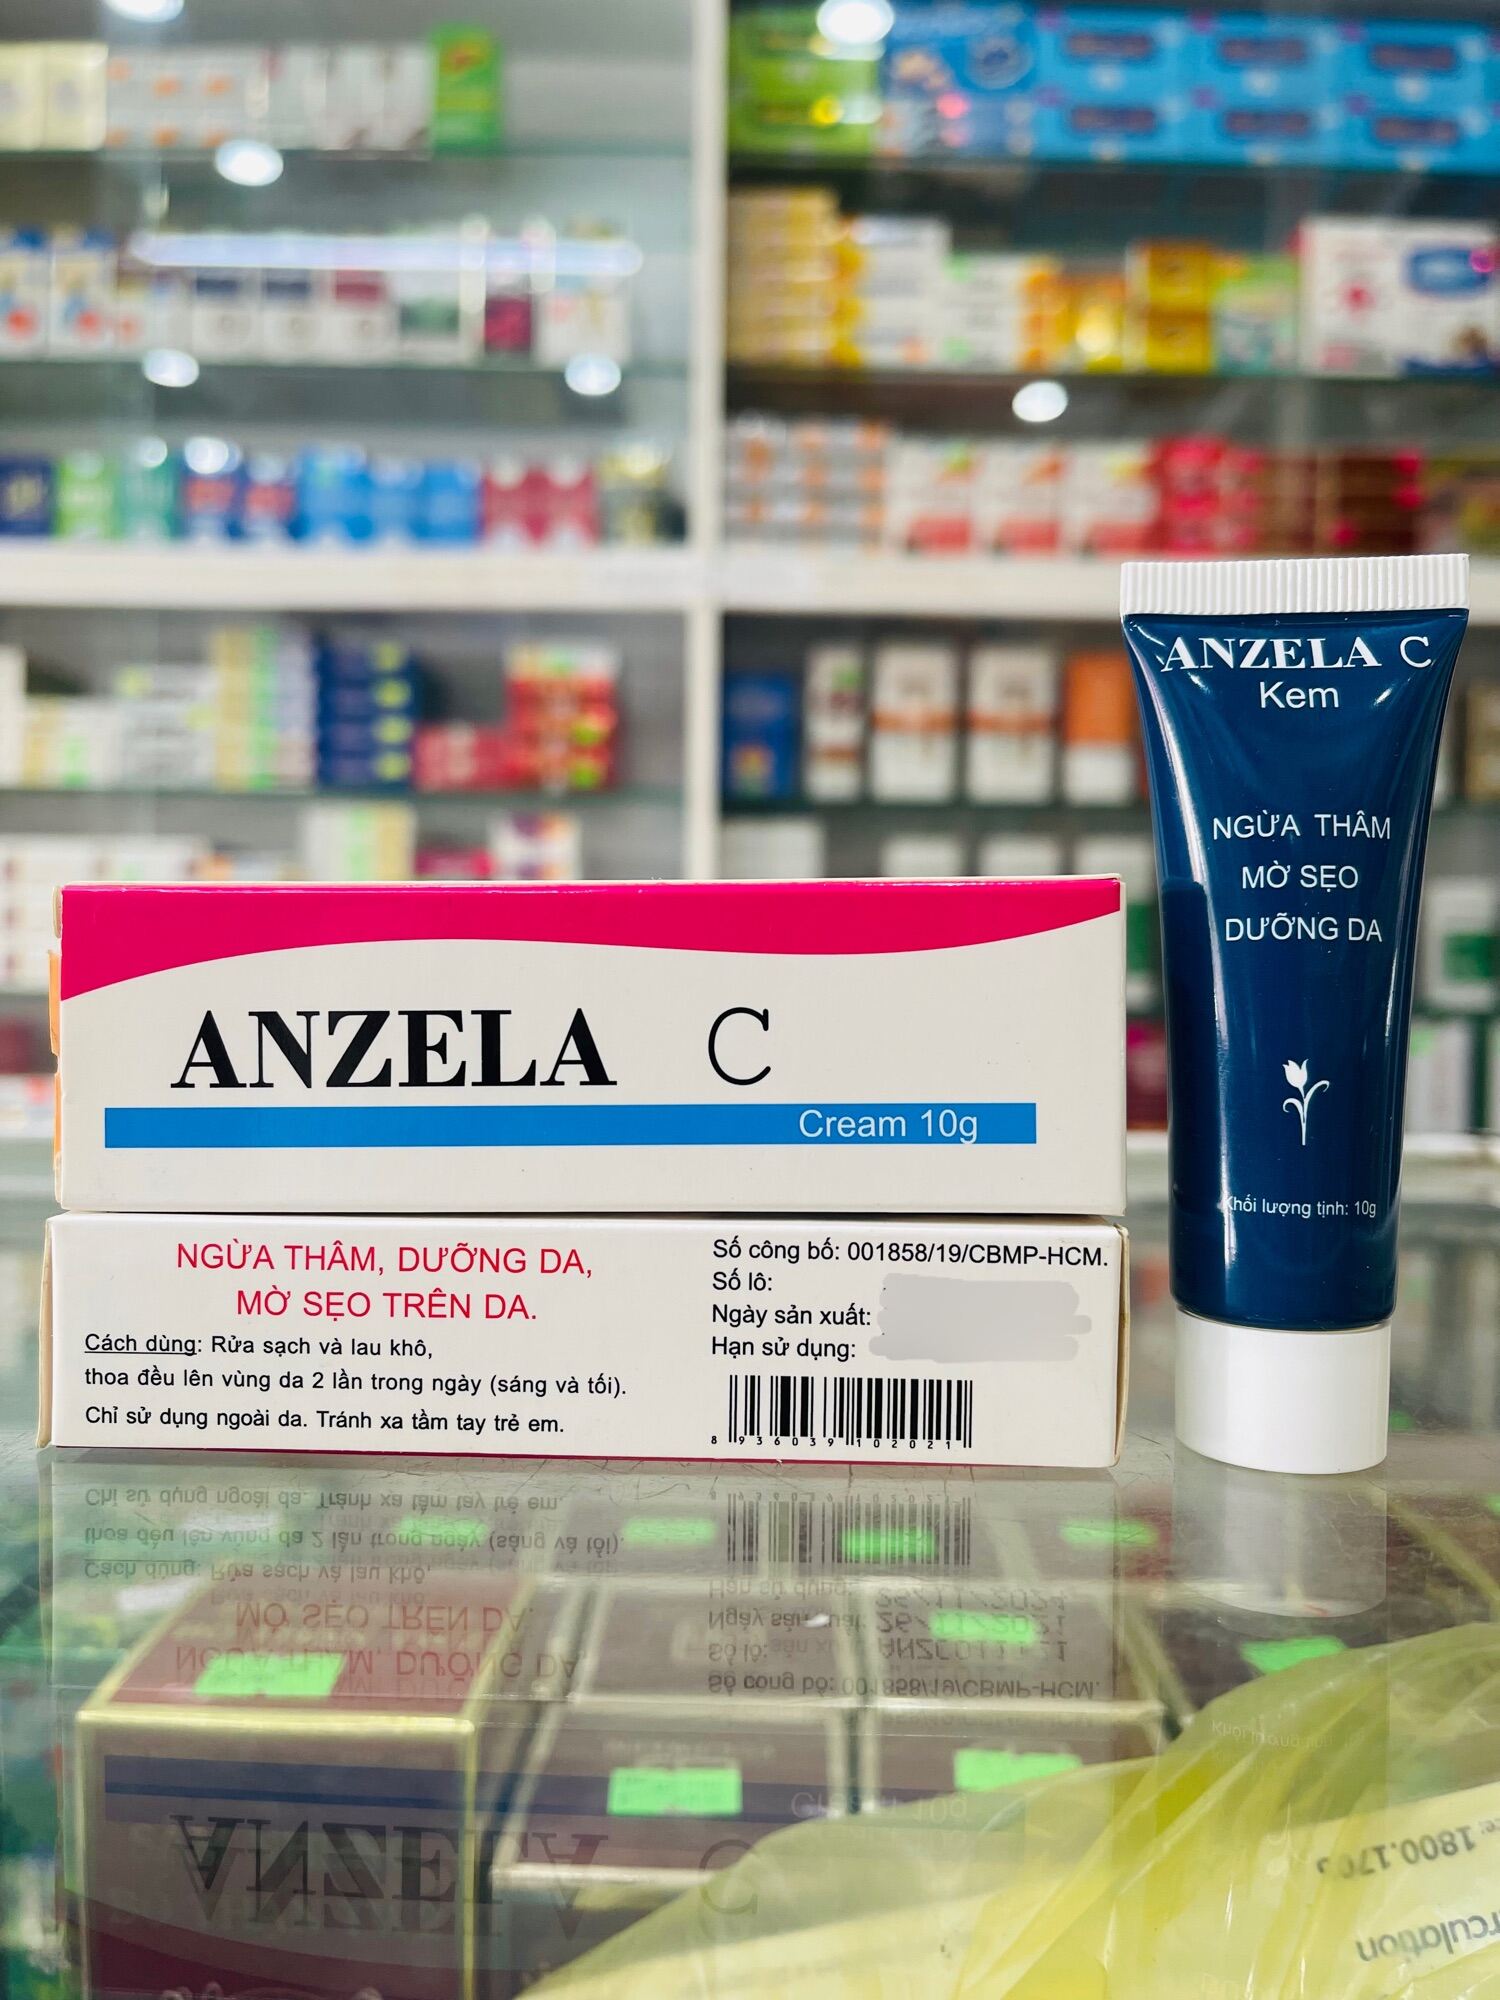 Anzela C giúp ngừa thâm mụn, mờ sẹo tuýp 10g